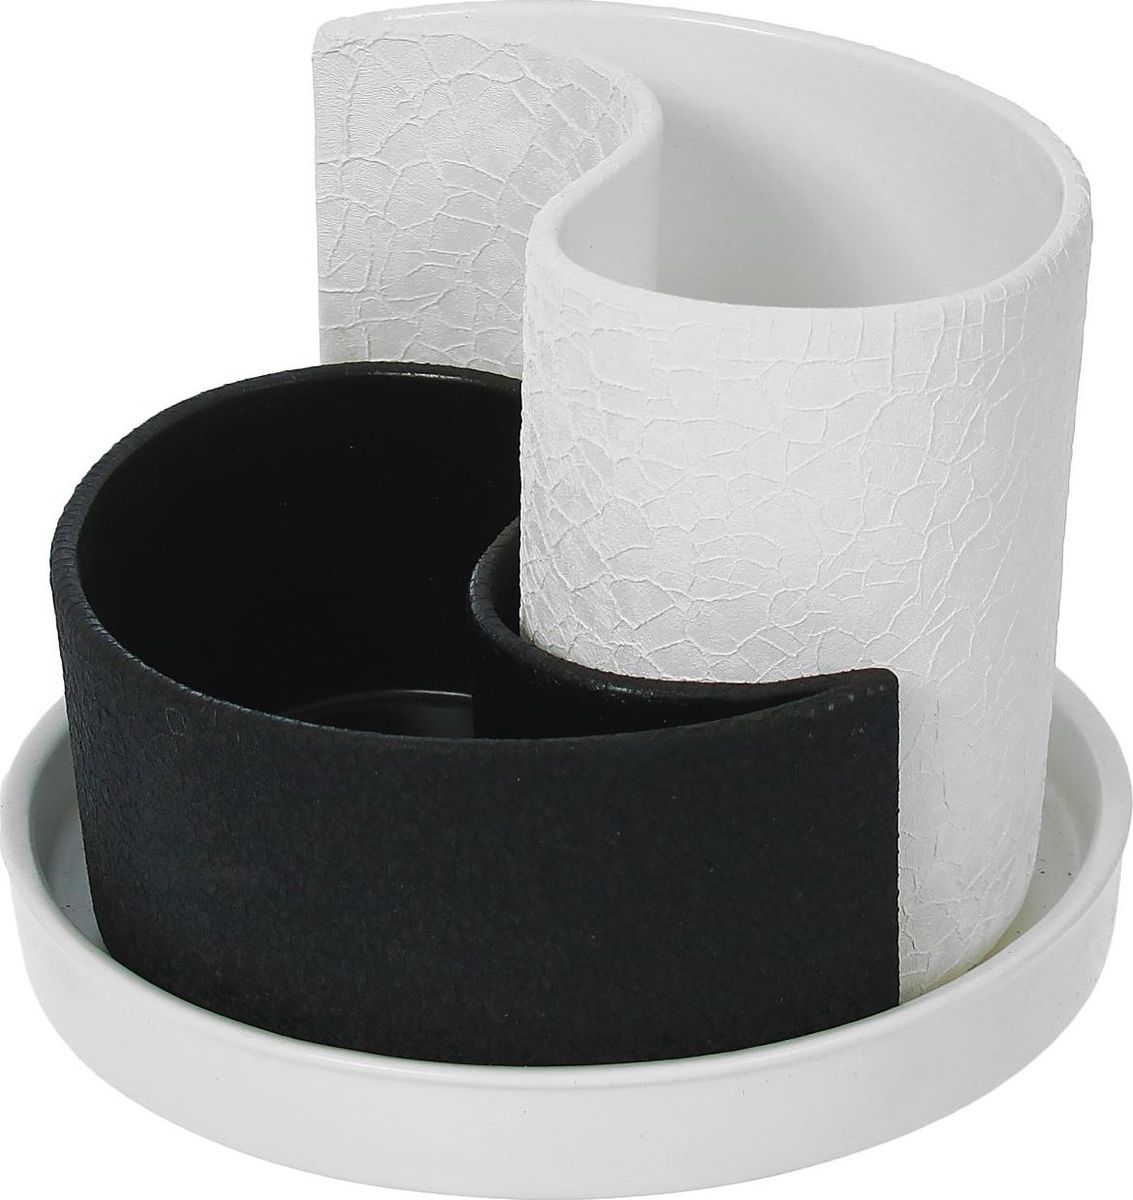 фото Набор кашпо Керамика ручной работы "Капля", цвет: черный, белый, 2 предмета